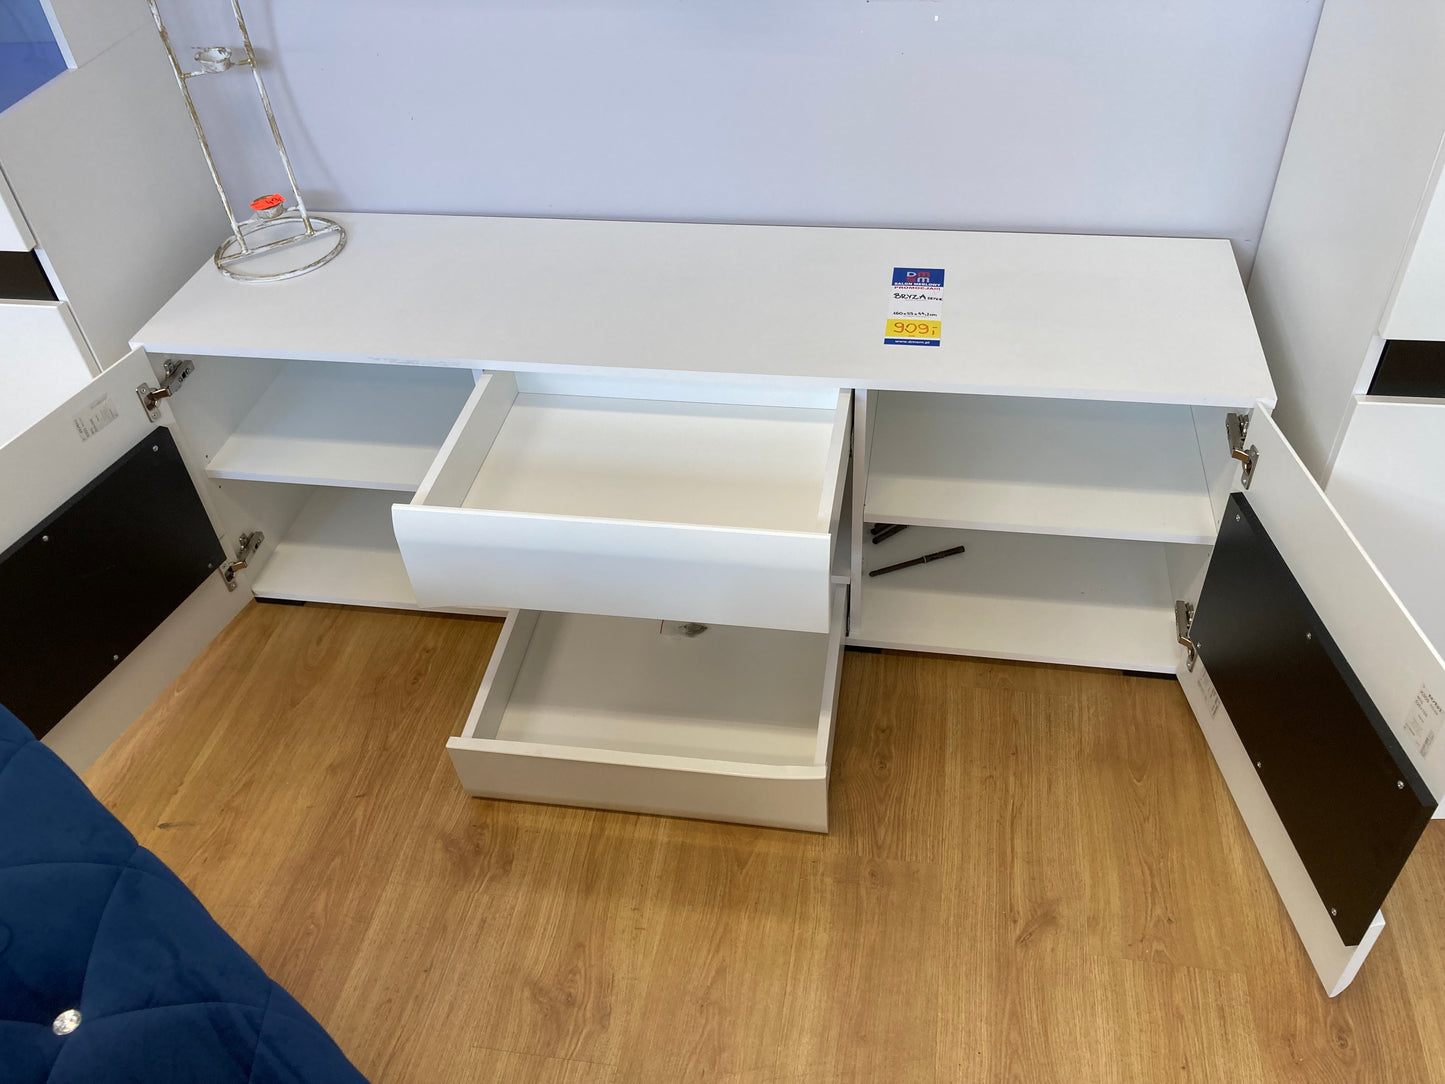 Wnętrze szafki stolika RTV BRYZA składa się z 2 szuflad oraz 2 szafek z półkami wewnątrz.